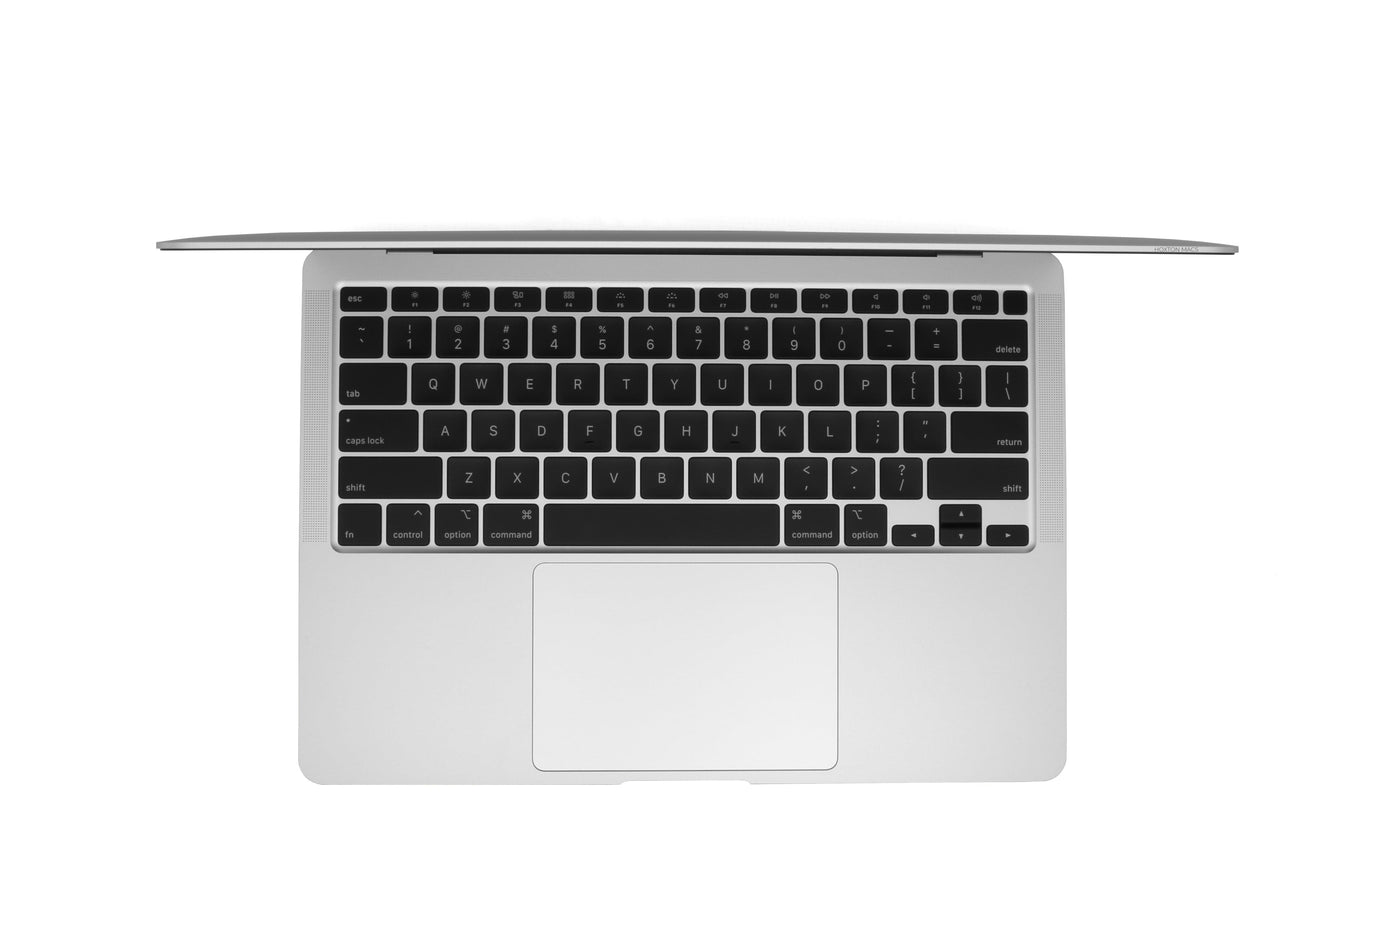 Apple MacBook Air 13-inch MacBook Air 13-inch M1 (Silver, 2020) - Good